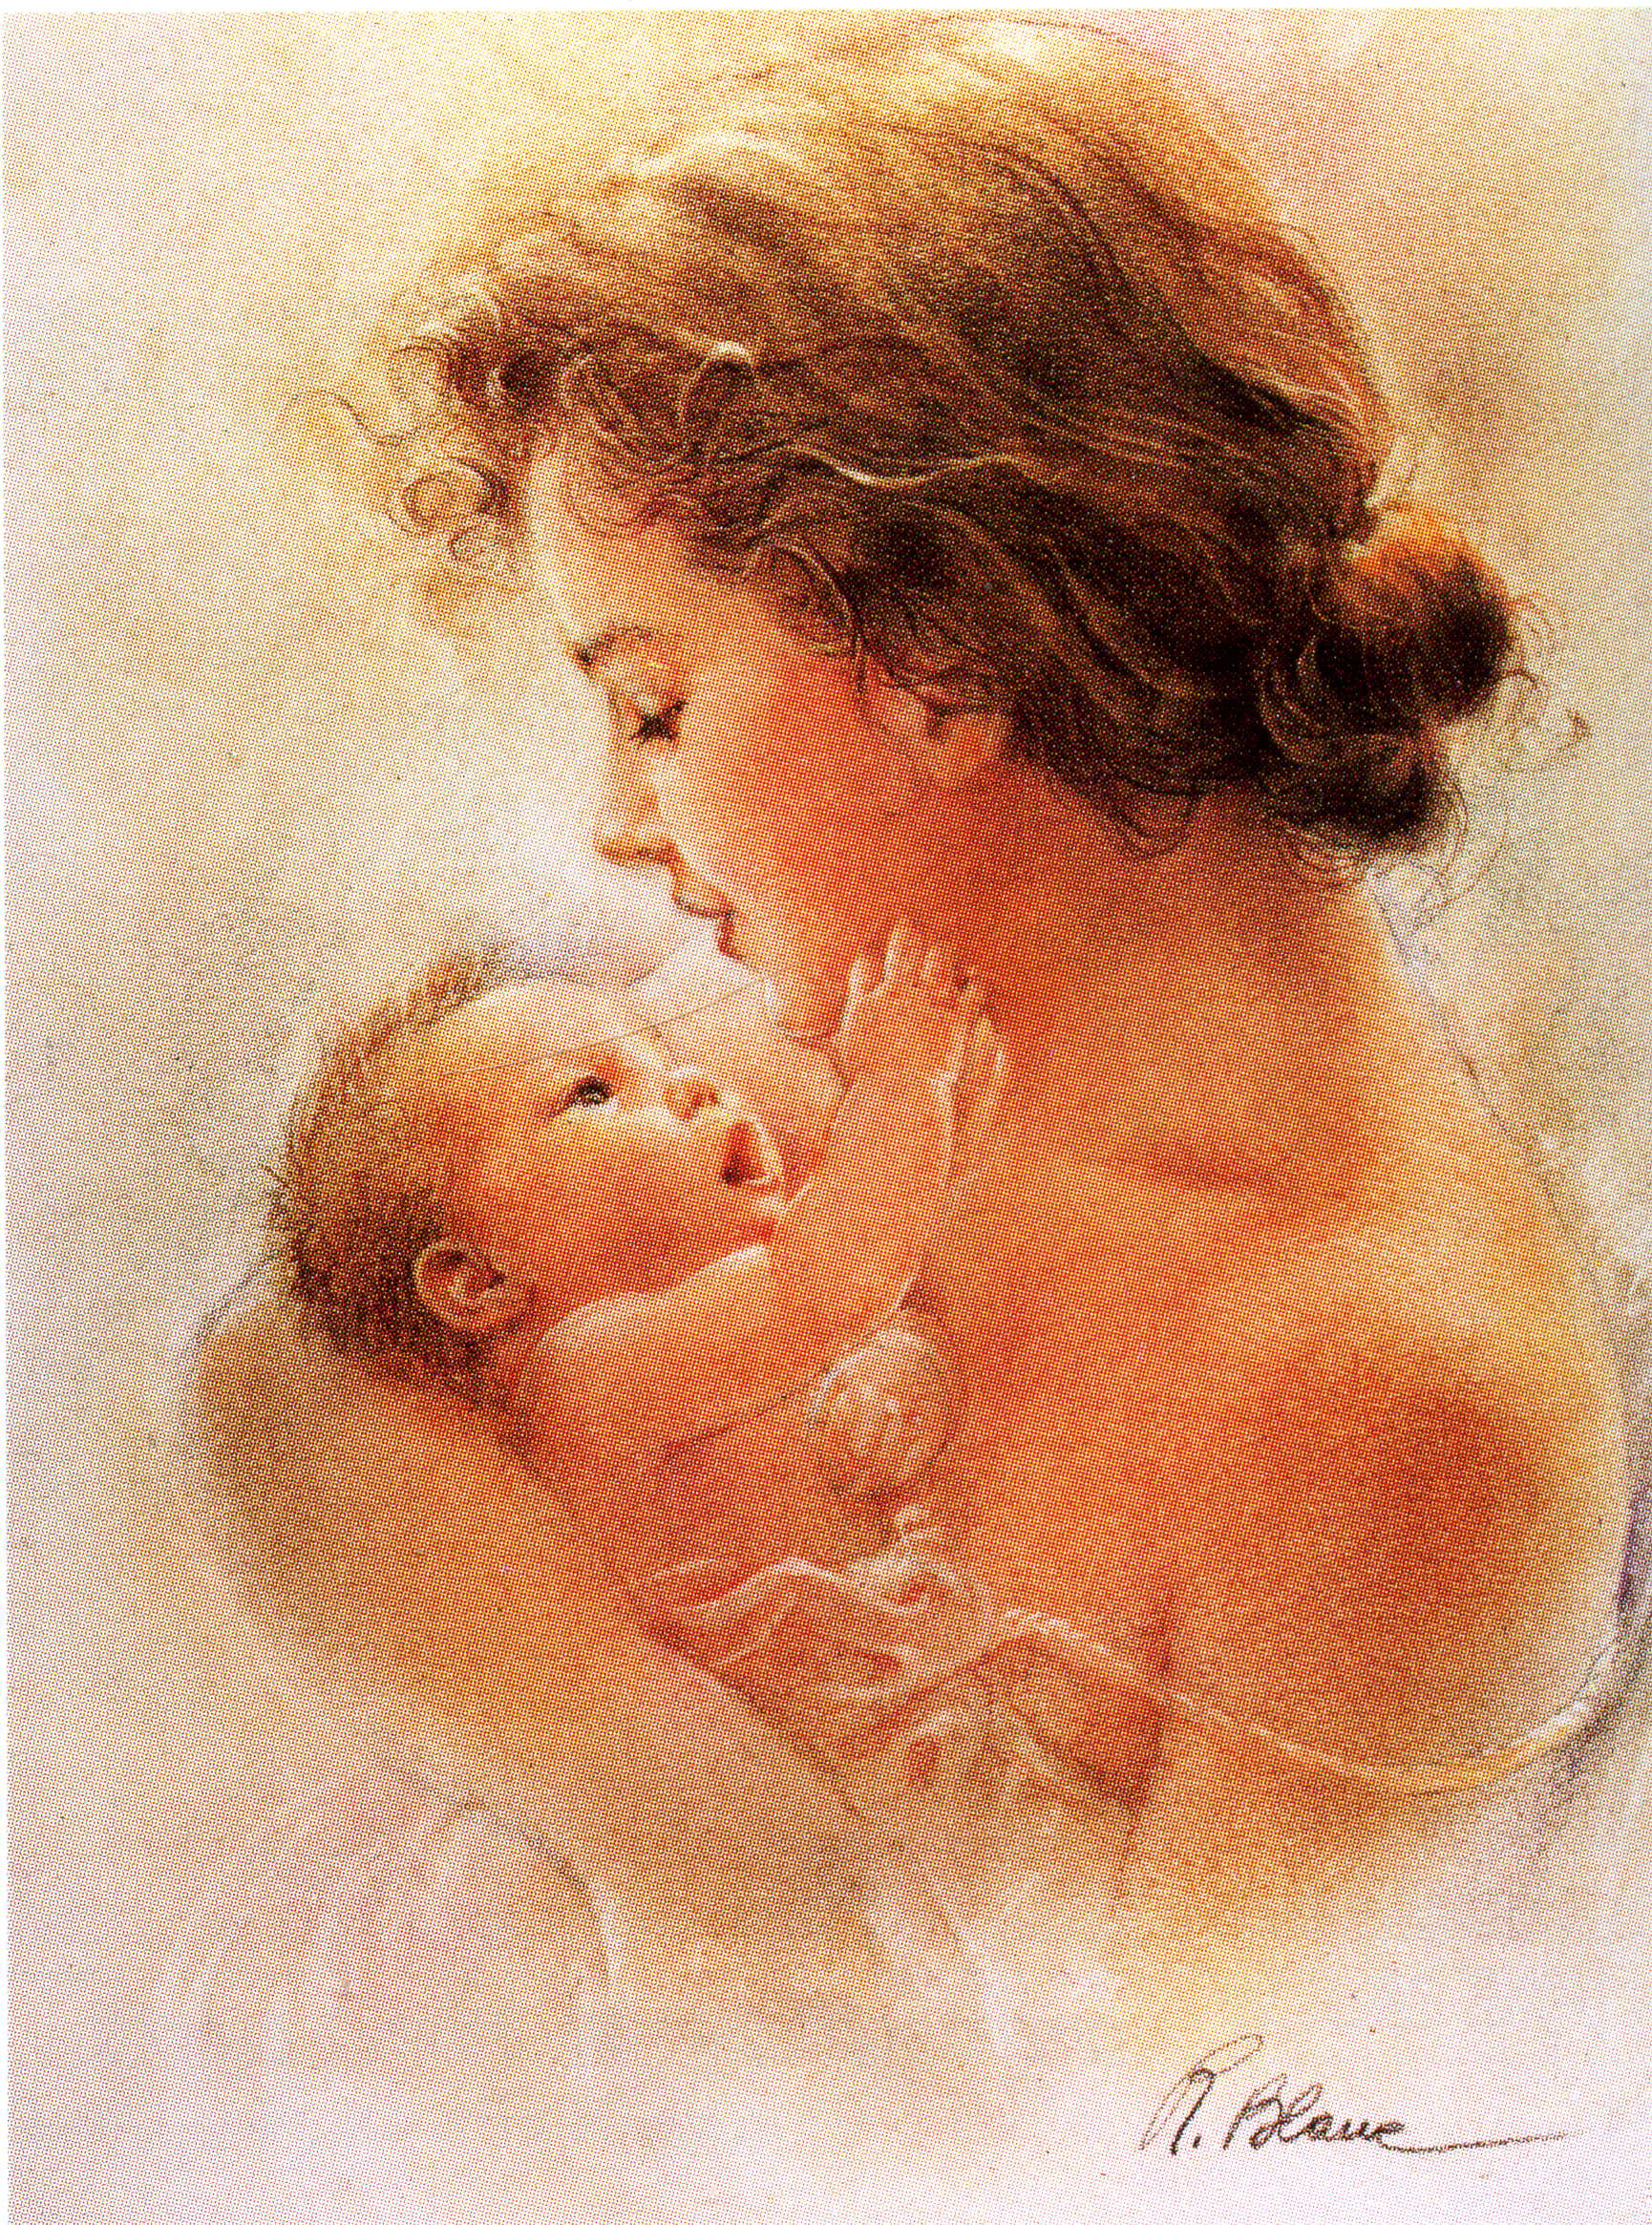 Мать т дитя. "Мать и дитя", Жук, 1906. Женщина с ребенком на руках. Женщина с ребенком акварель. Мама с младенцем на руках.